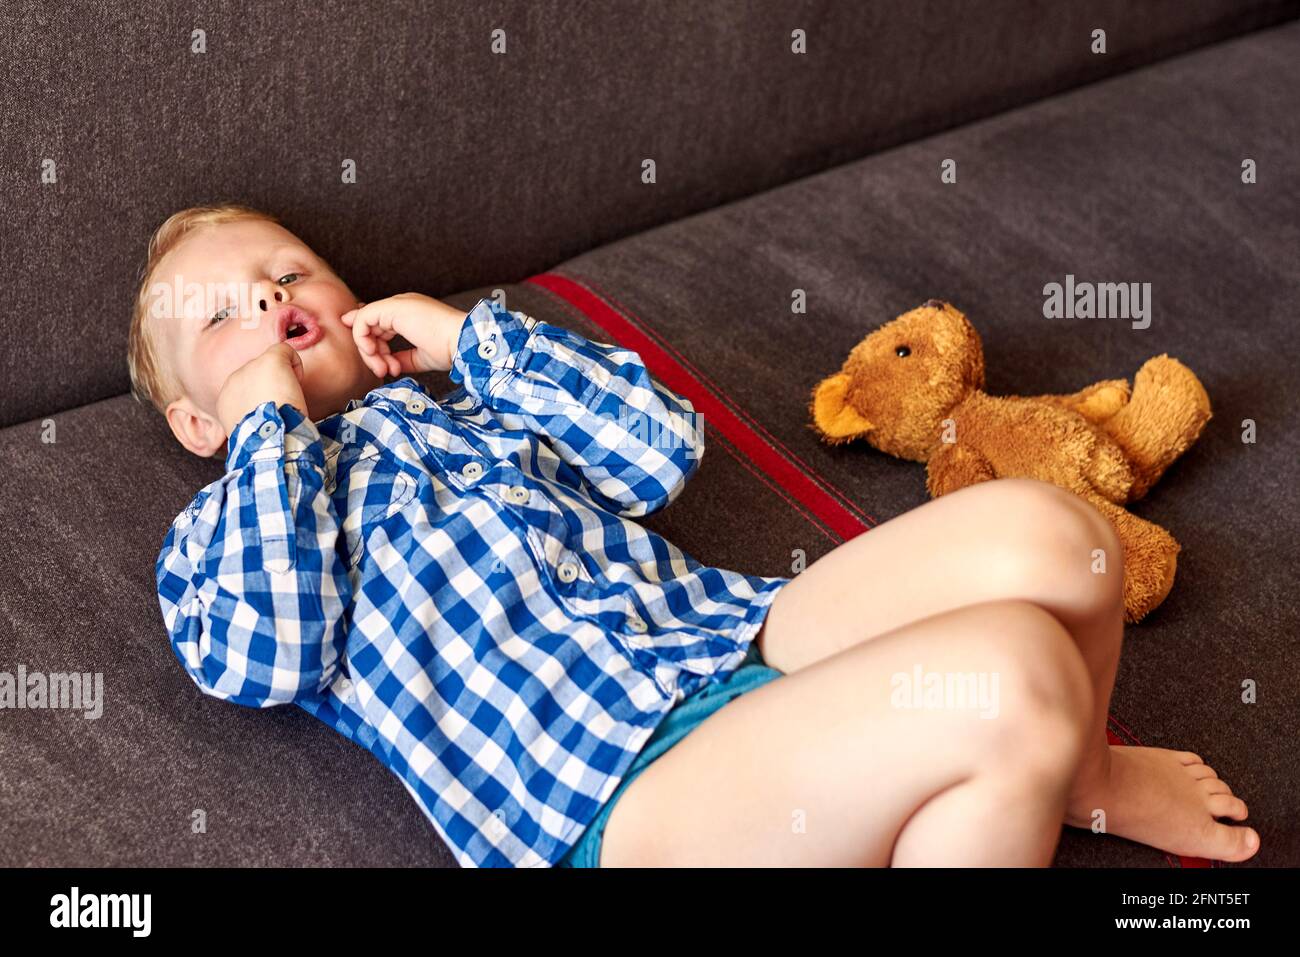 Un garçon de trois ans souffrant d'une déficience mentale se trouve sur le canapé près de l'ours en peluche à la maison. Banque D'Images